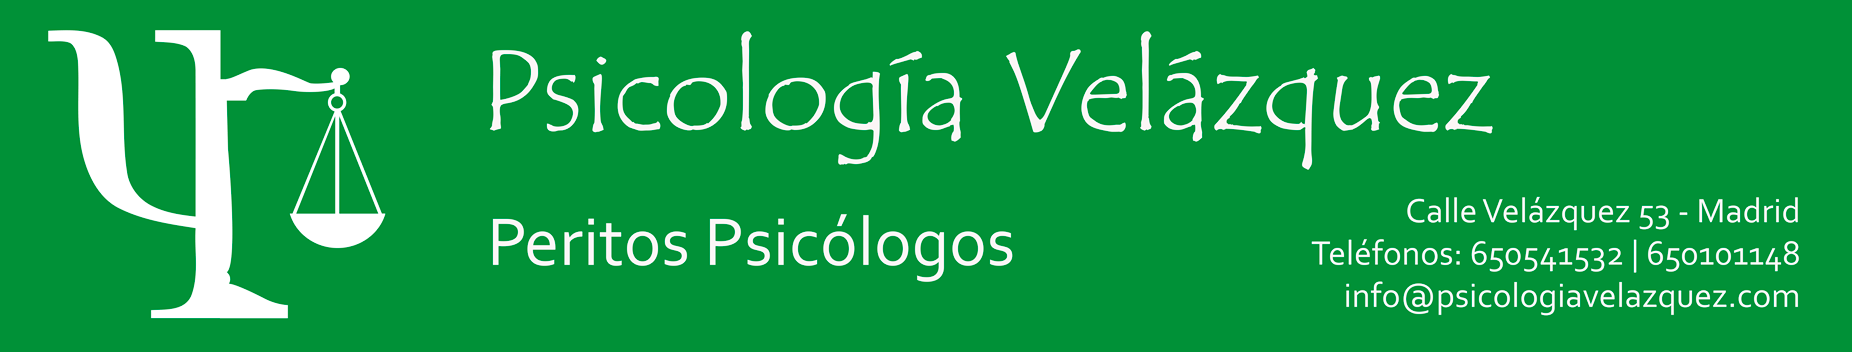 Psicología Velázquez, jupsin.com, acoso laboral, psicología forense